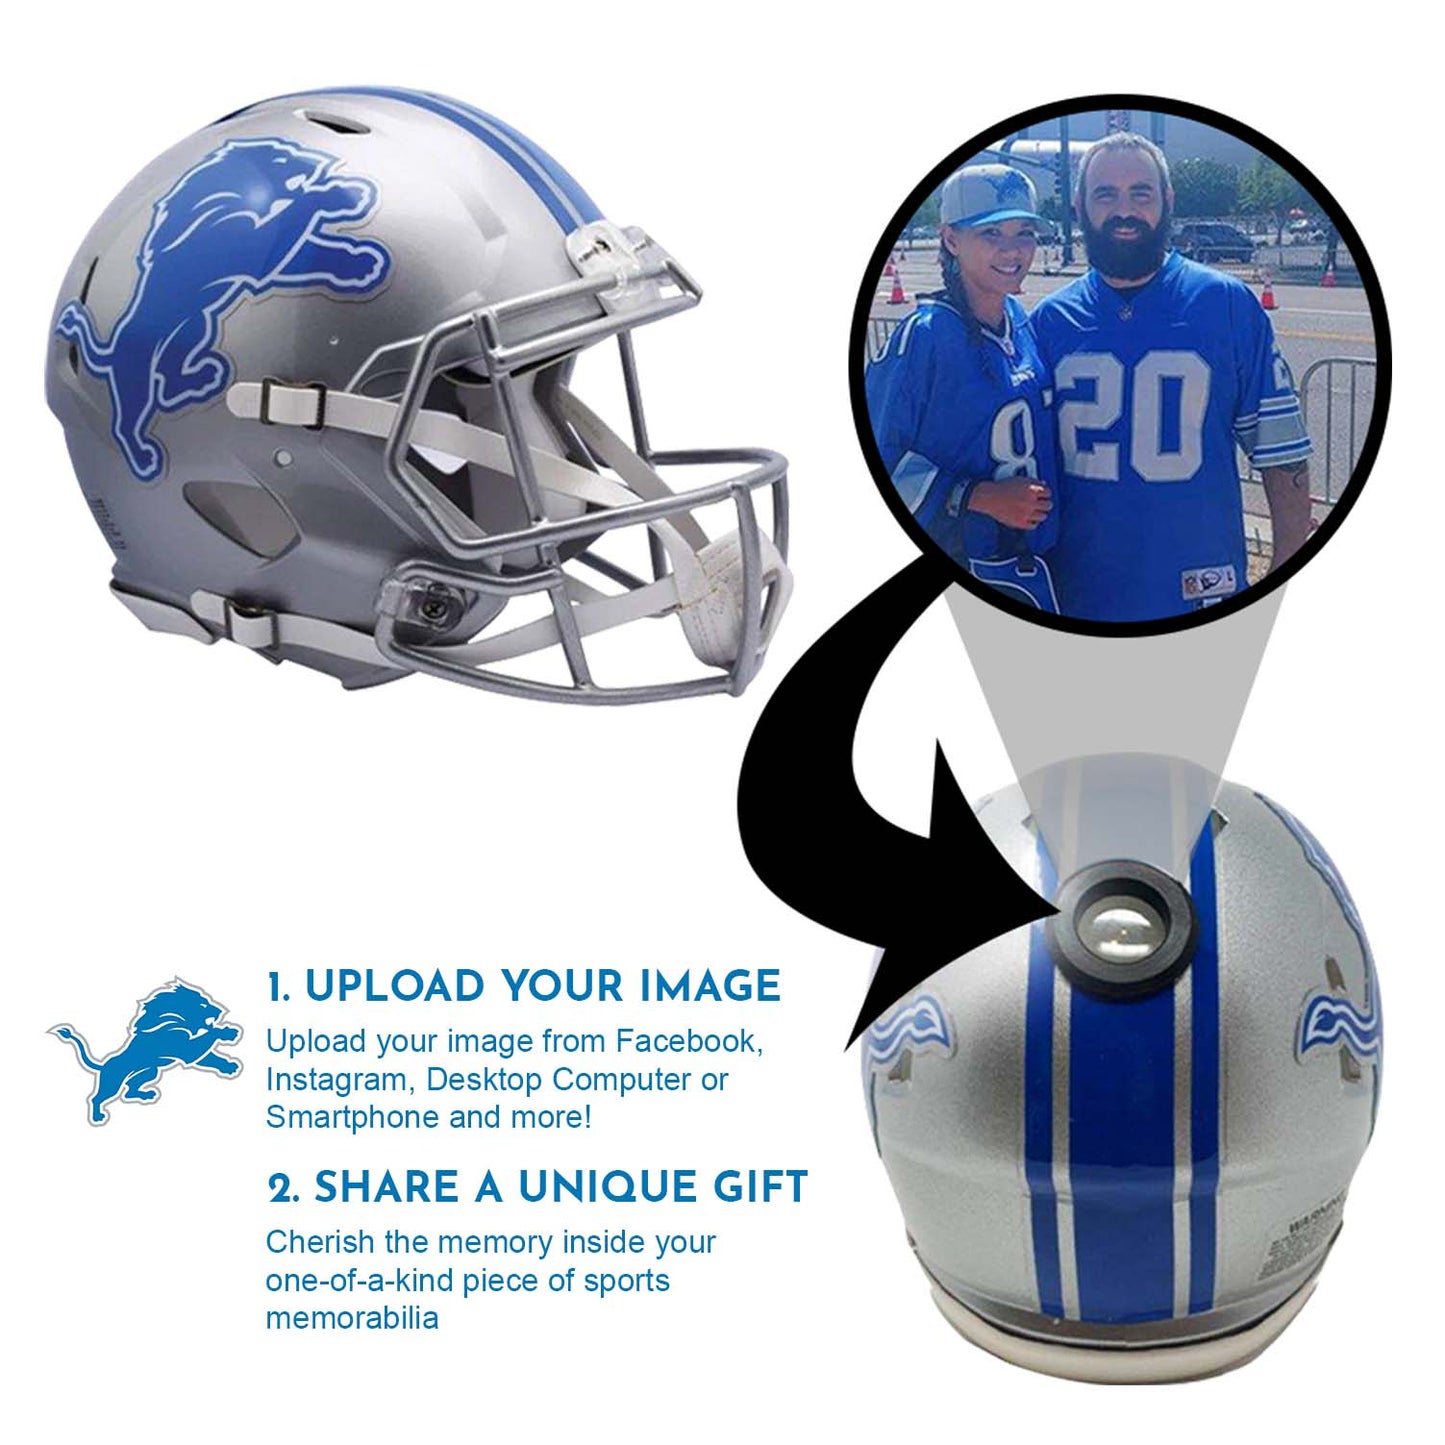 Detroit Lions NFL Collectible Mini Helmet - Picture Inside - FANZ Collectibles